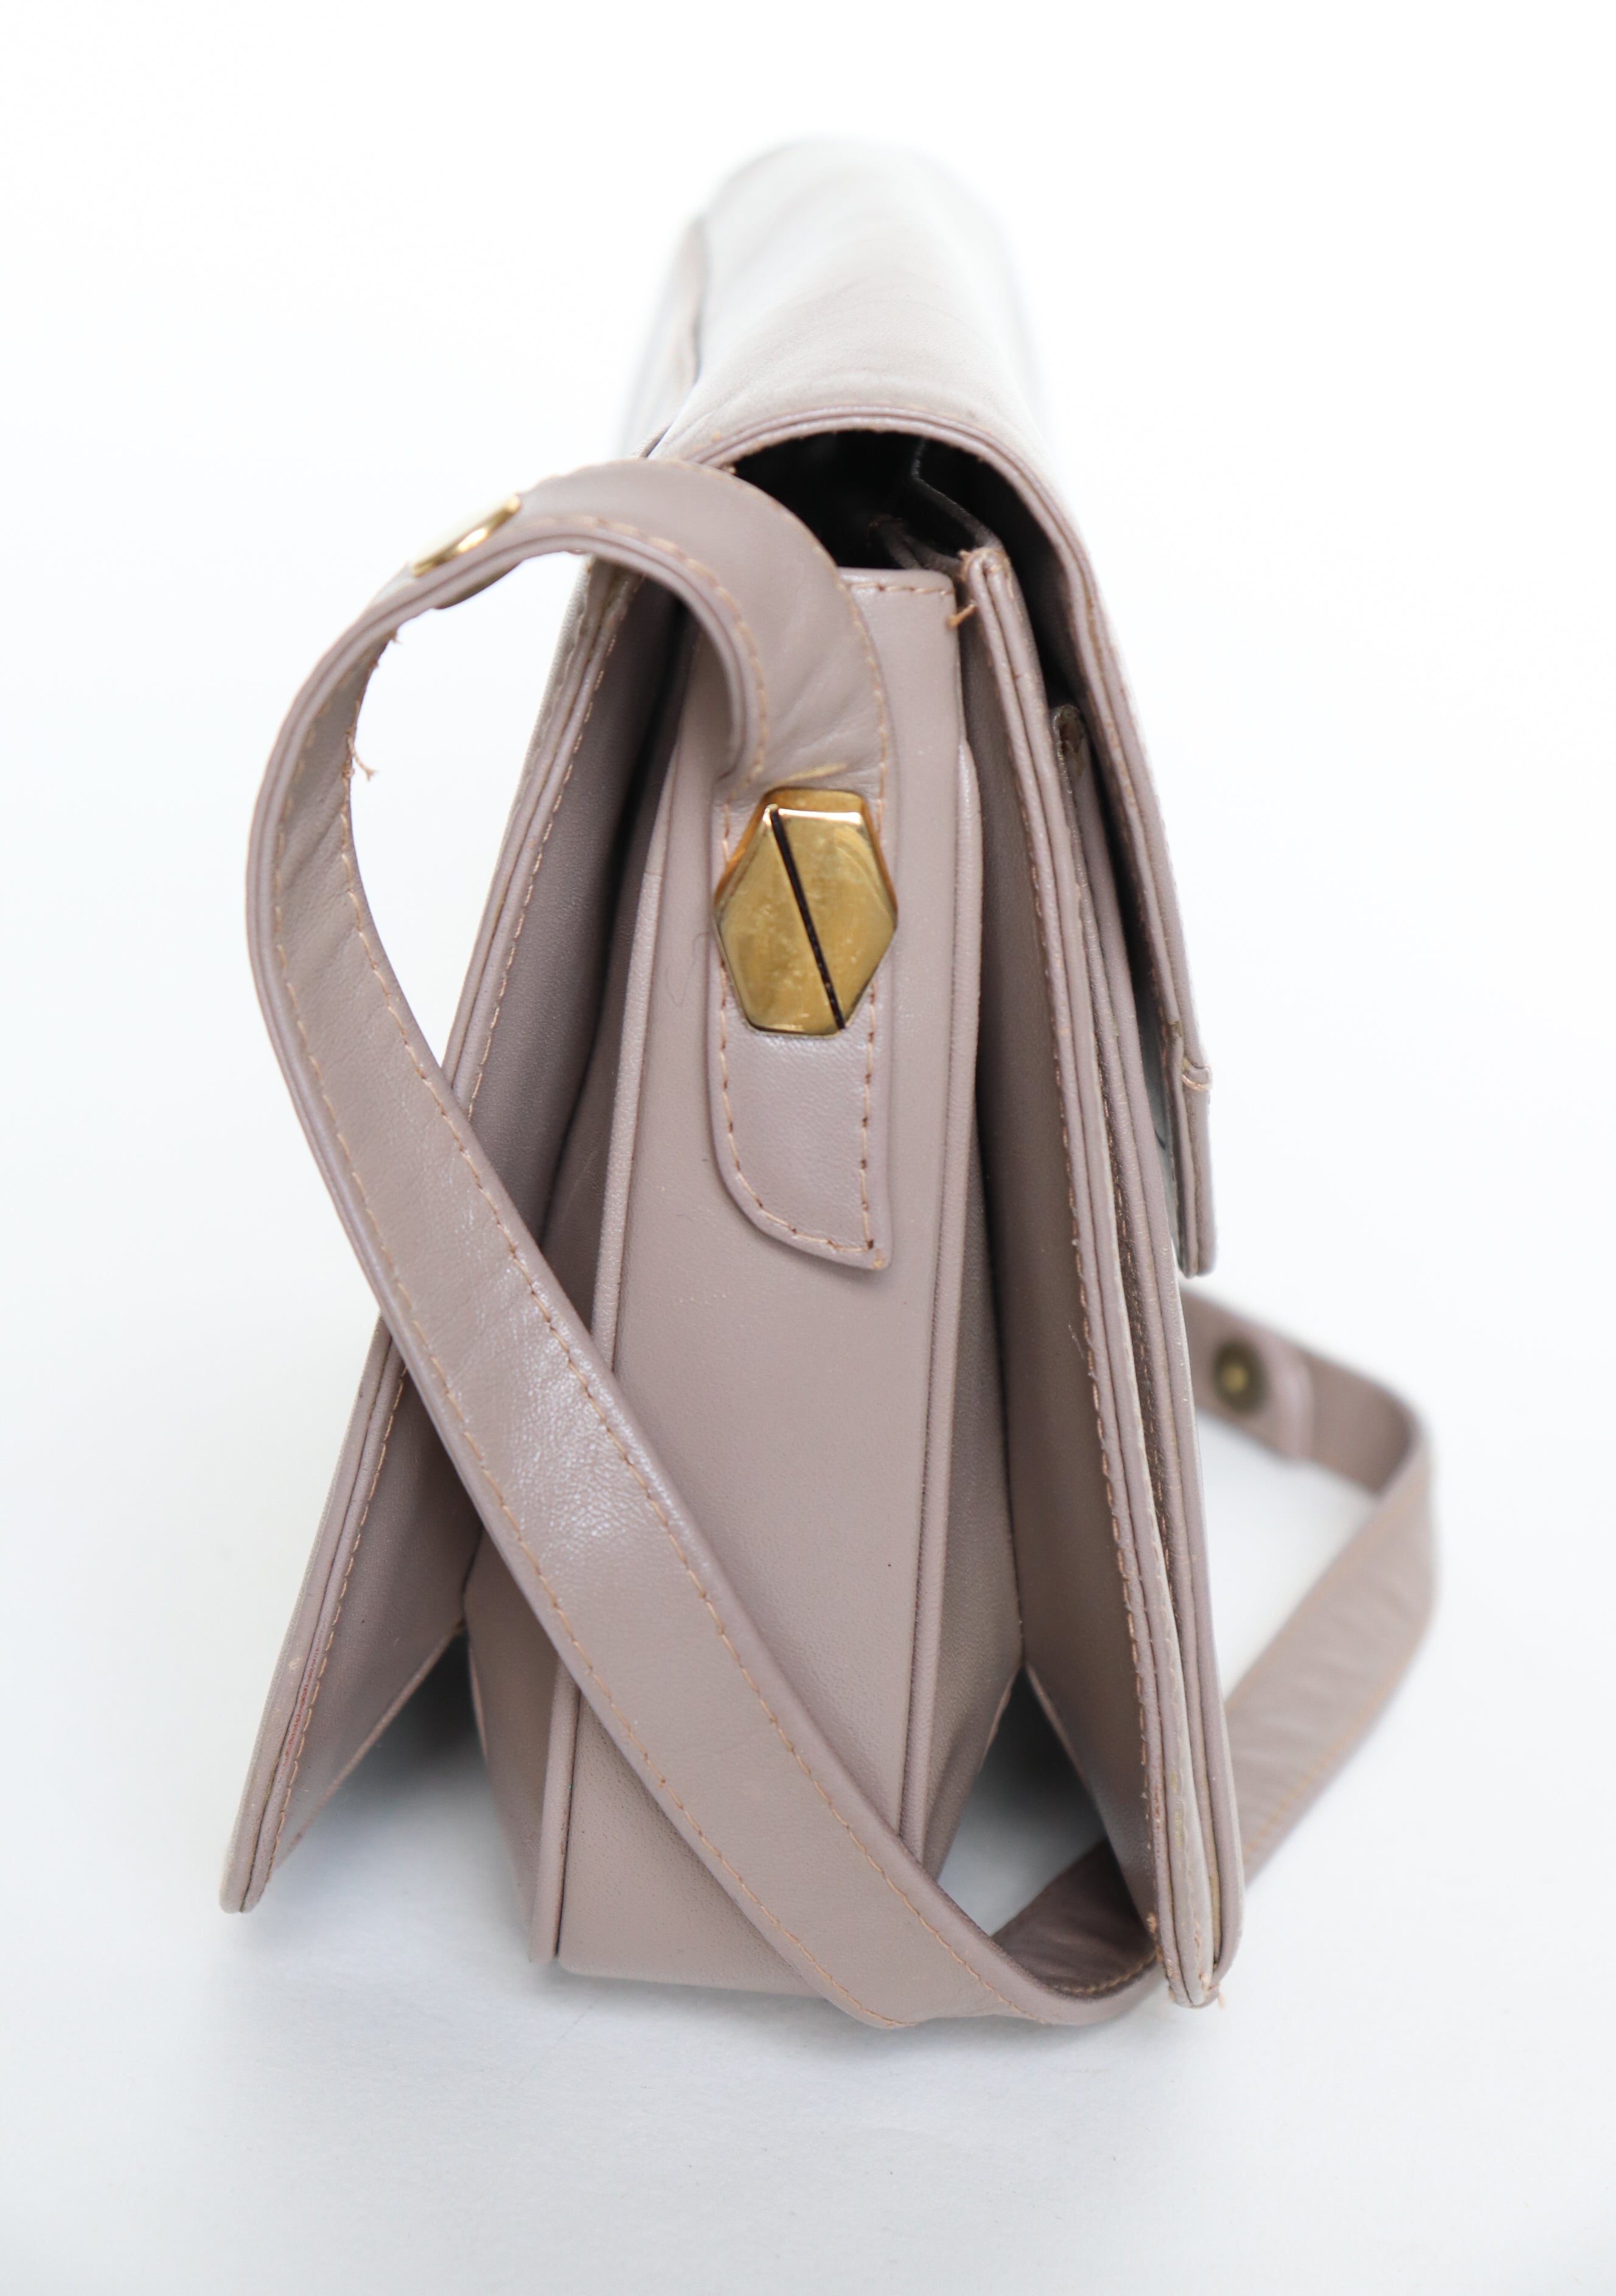 Beige Leather 1980s Shoulder Bag - Vintage - 2 Way Shoulder Strap - Small / Medium